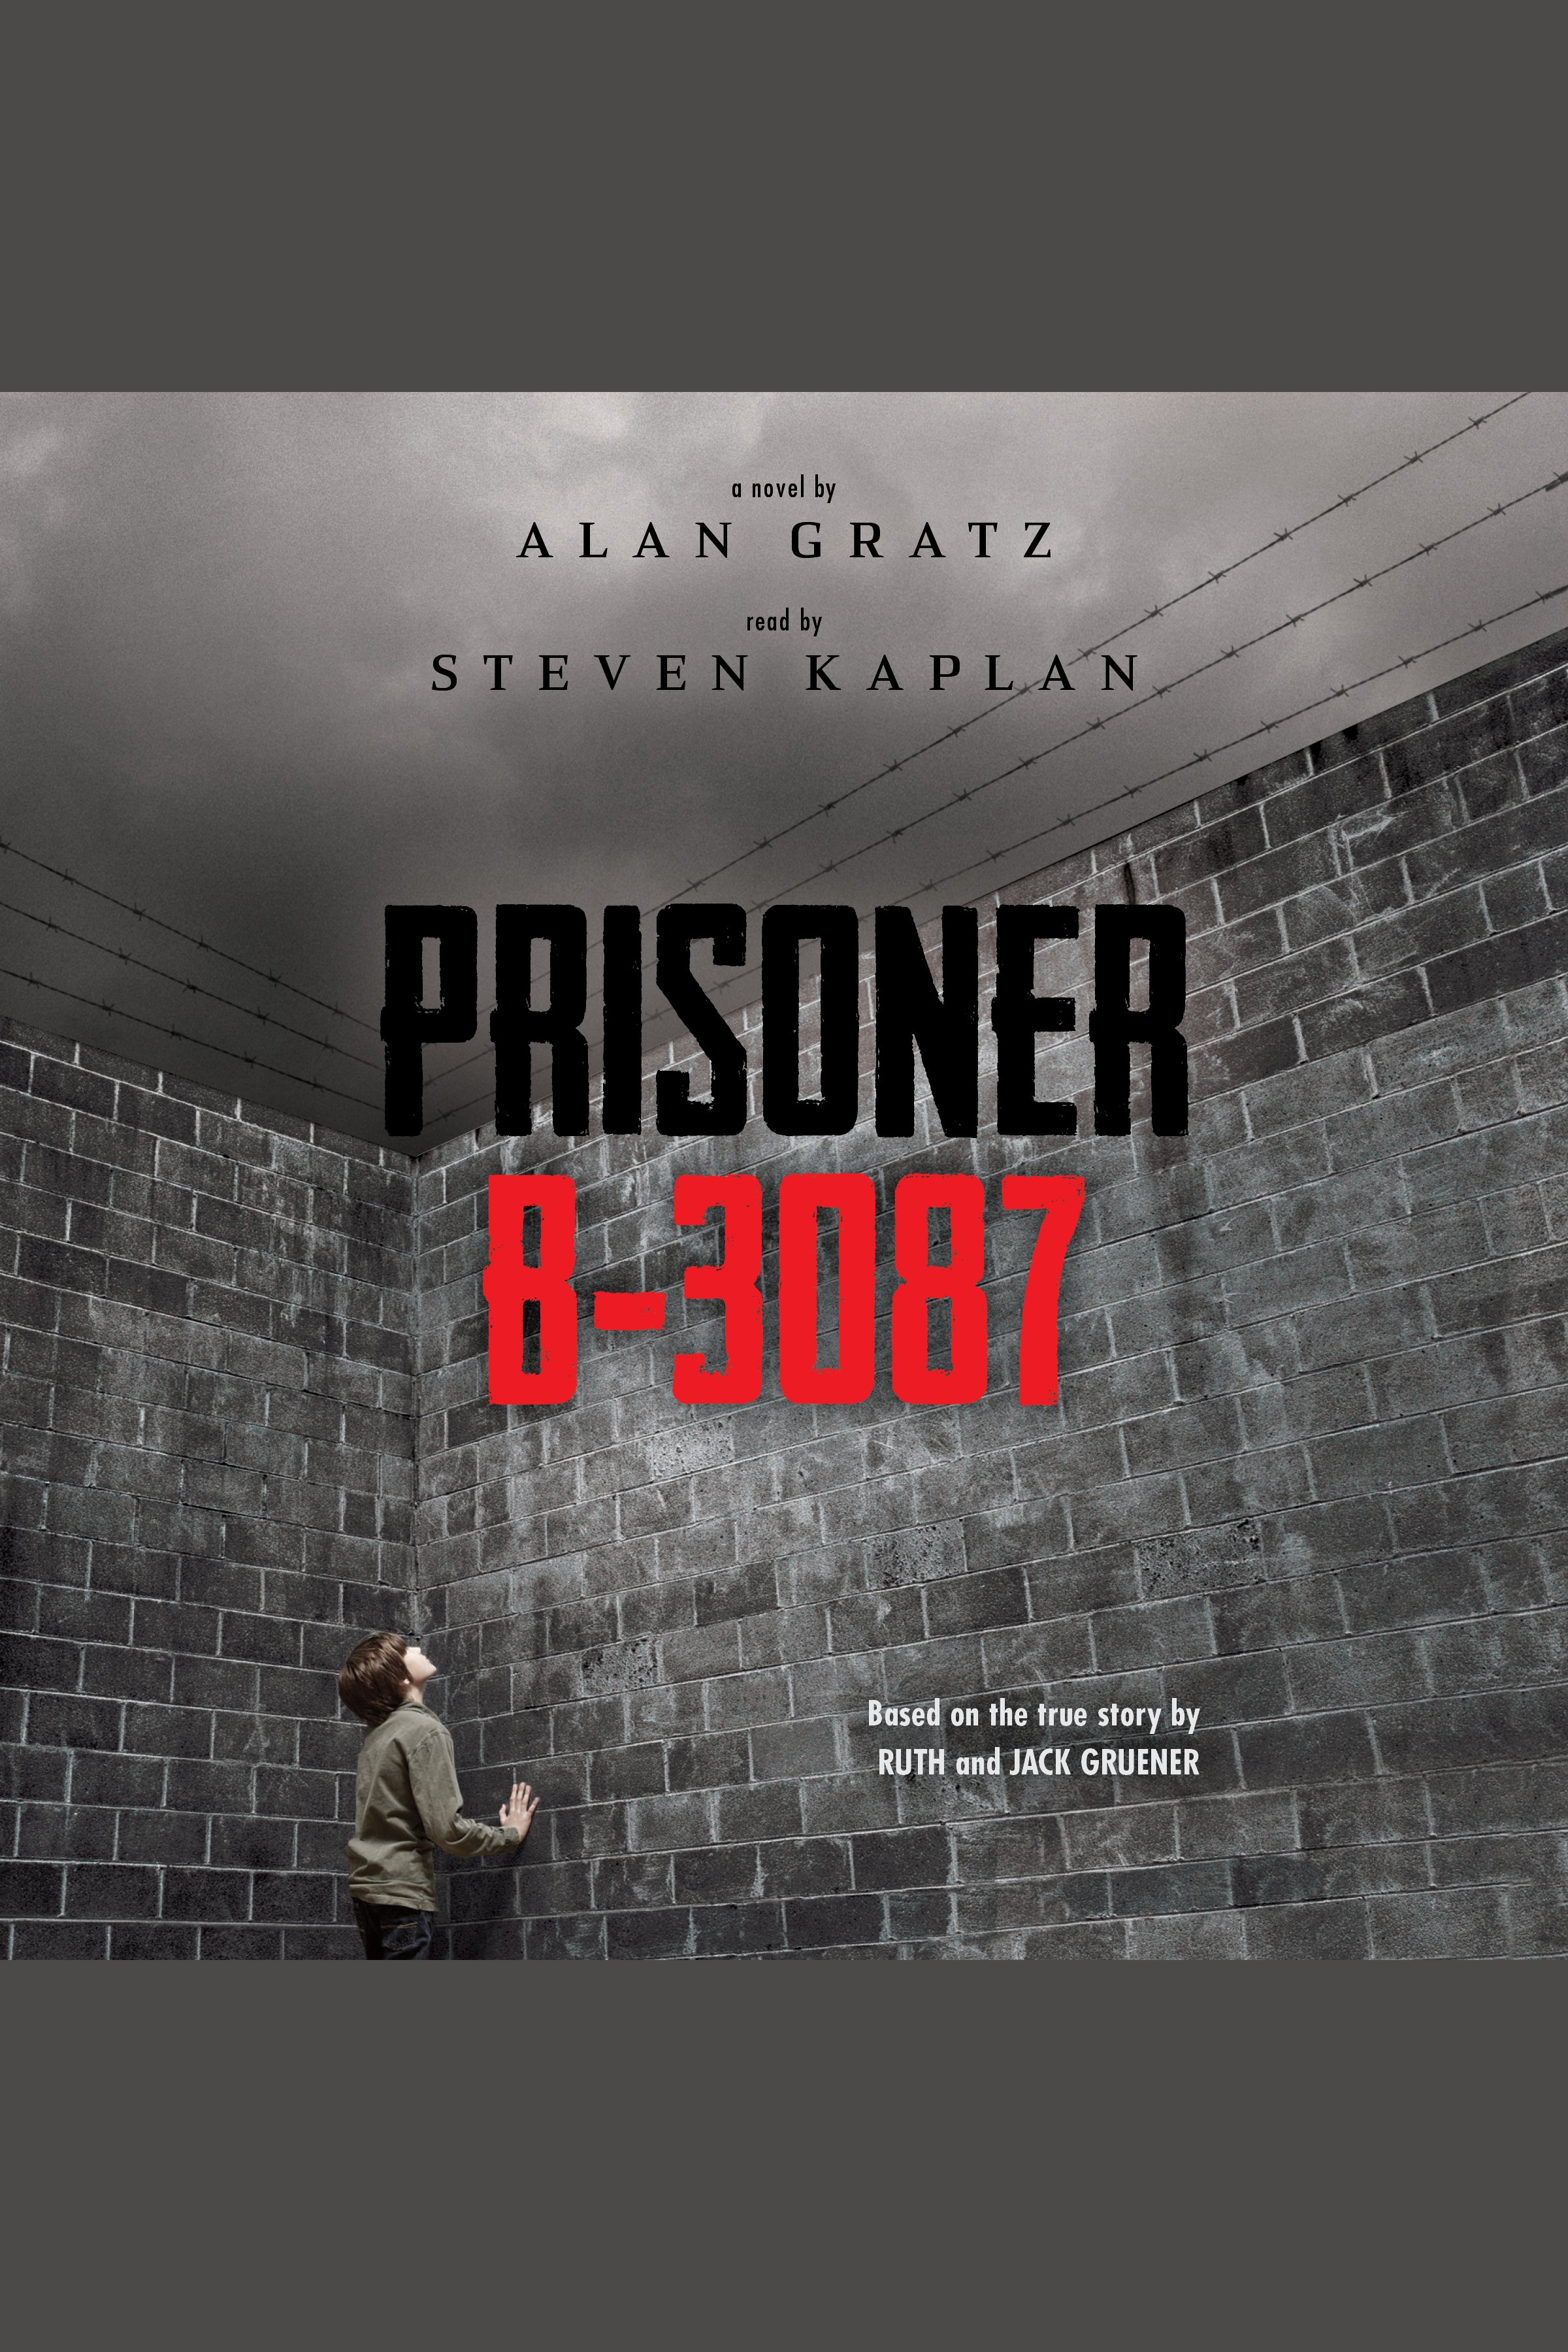 Prisoner B-3087 cover image